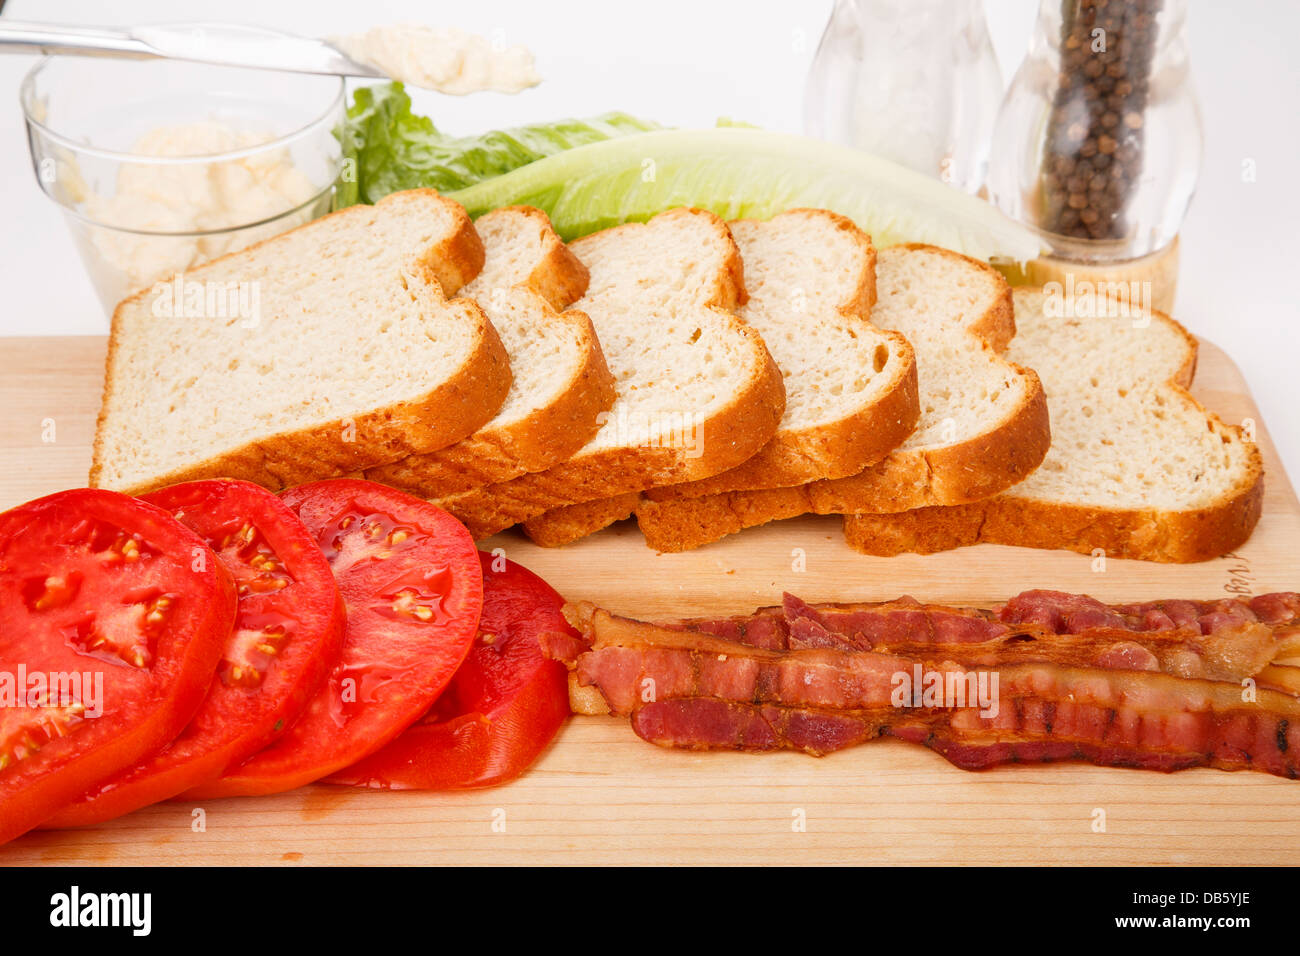 Le pain en tranches et les tomates cuites, bacon, laitue, mayonnaise et épices pour un sandwich BLT Banque D'Images